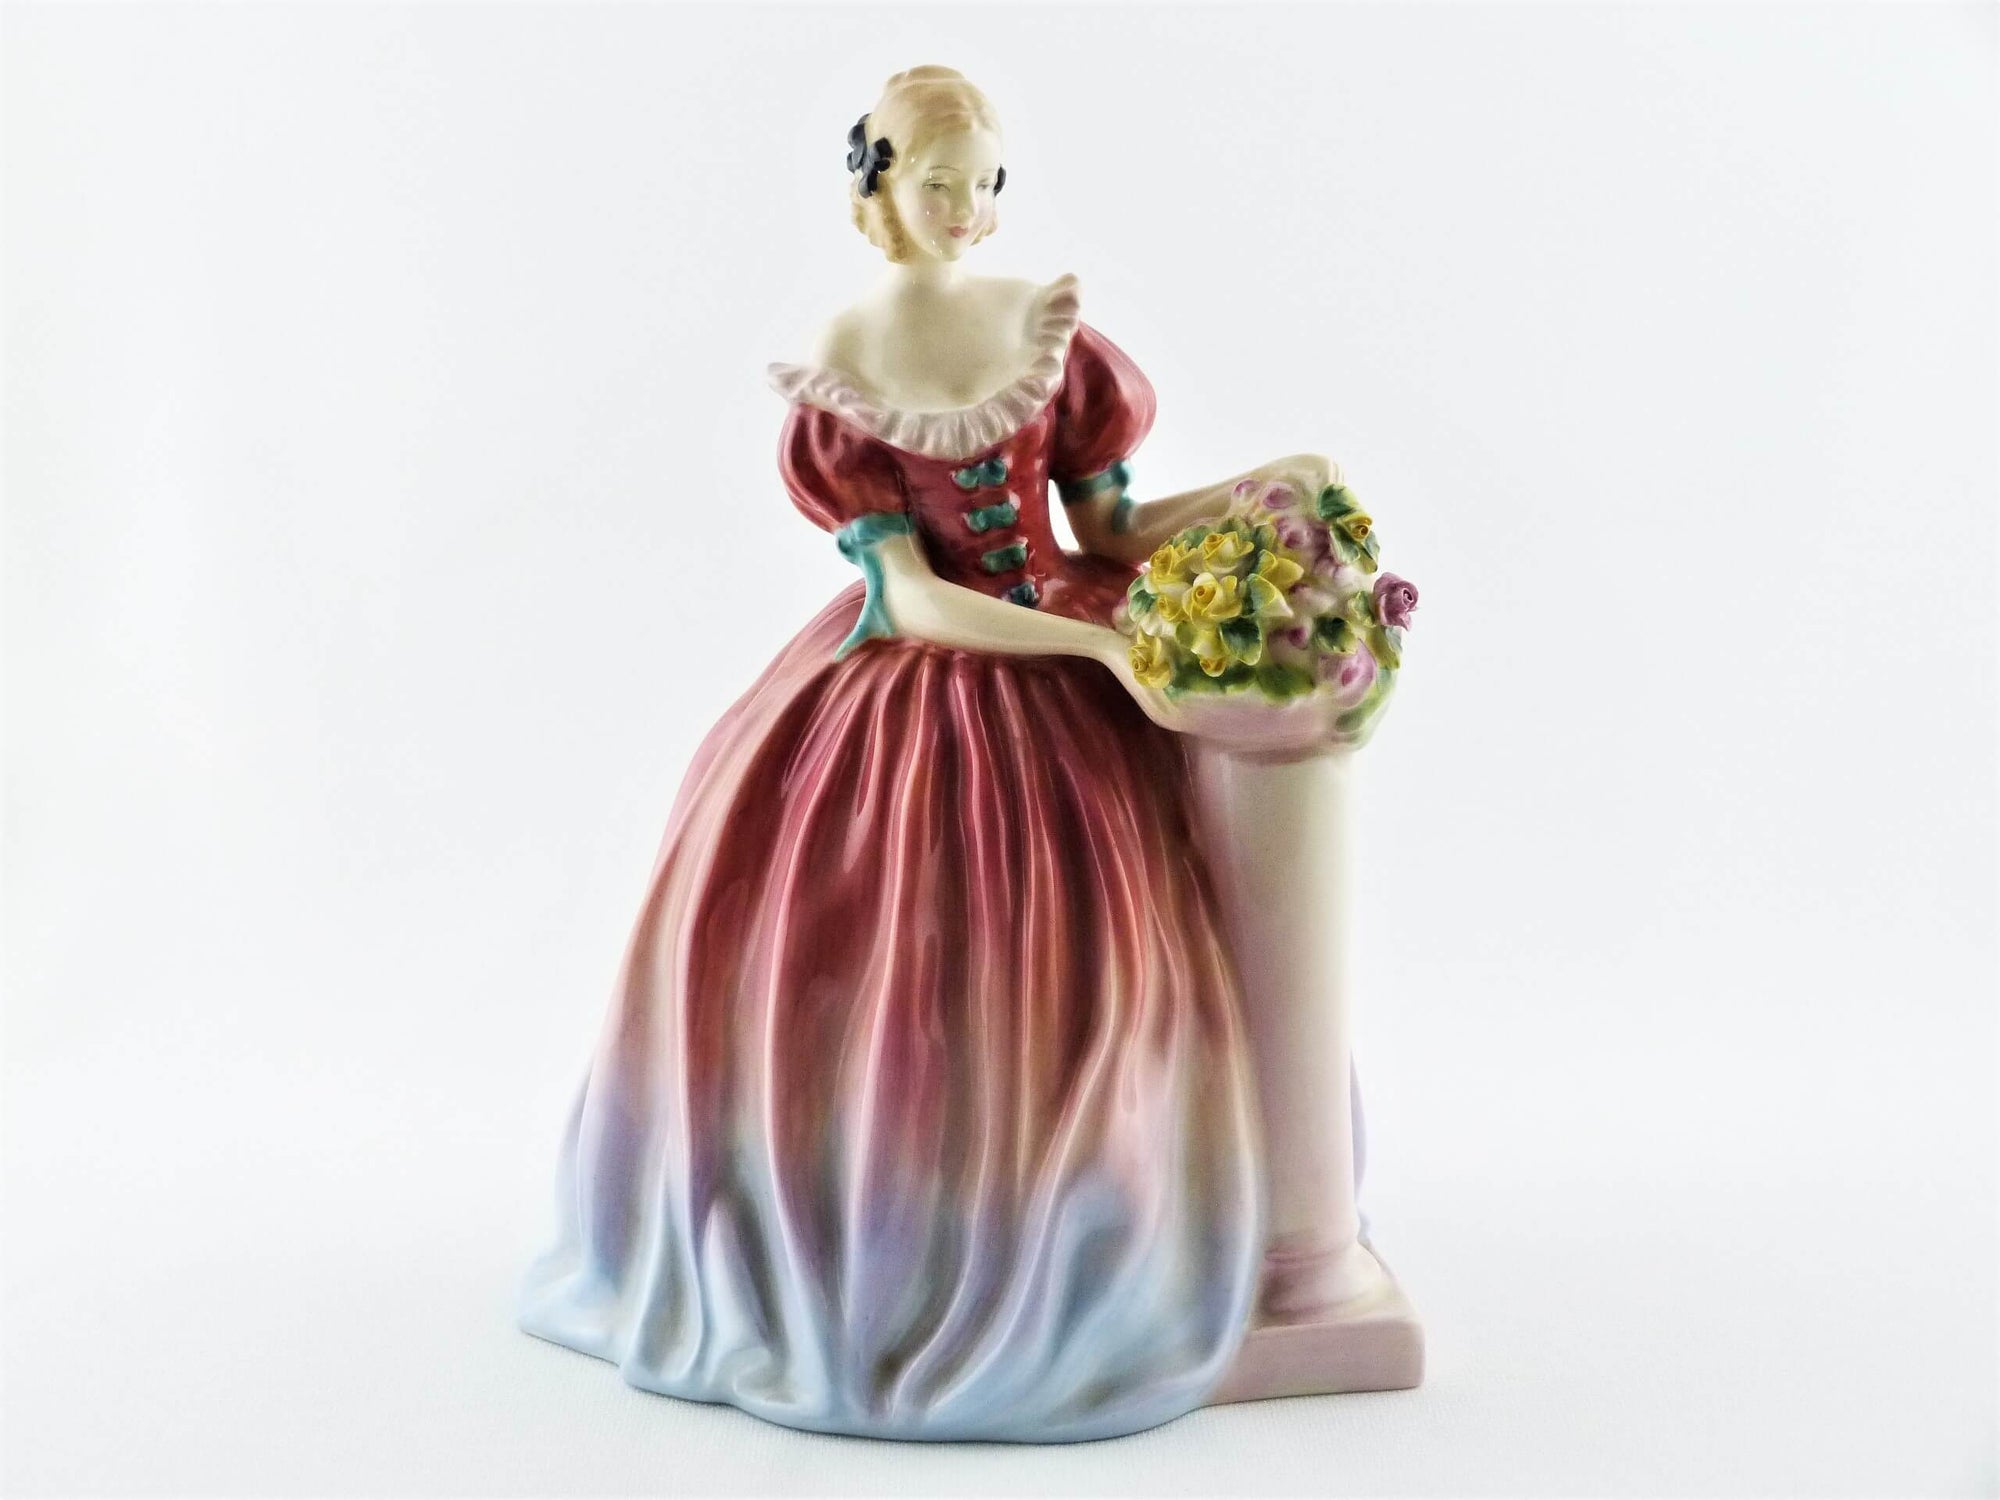 Royal Doulton Figurine, 'Roseanna',  Issued 1940 - 59, Leslie Harradine